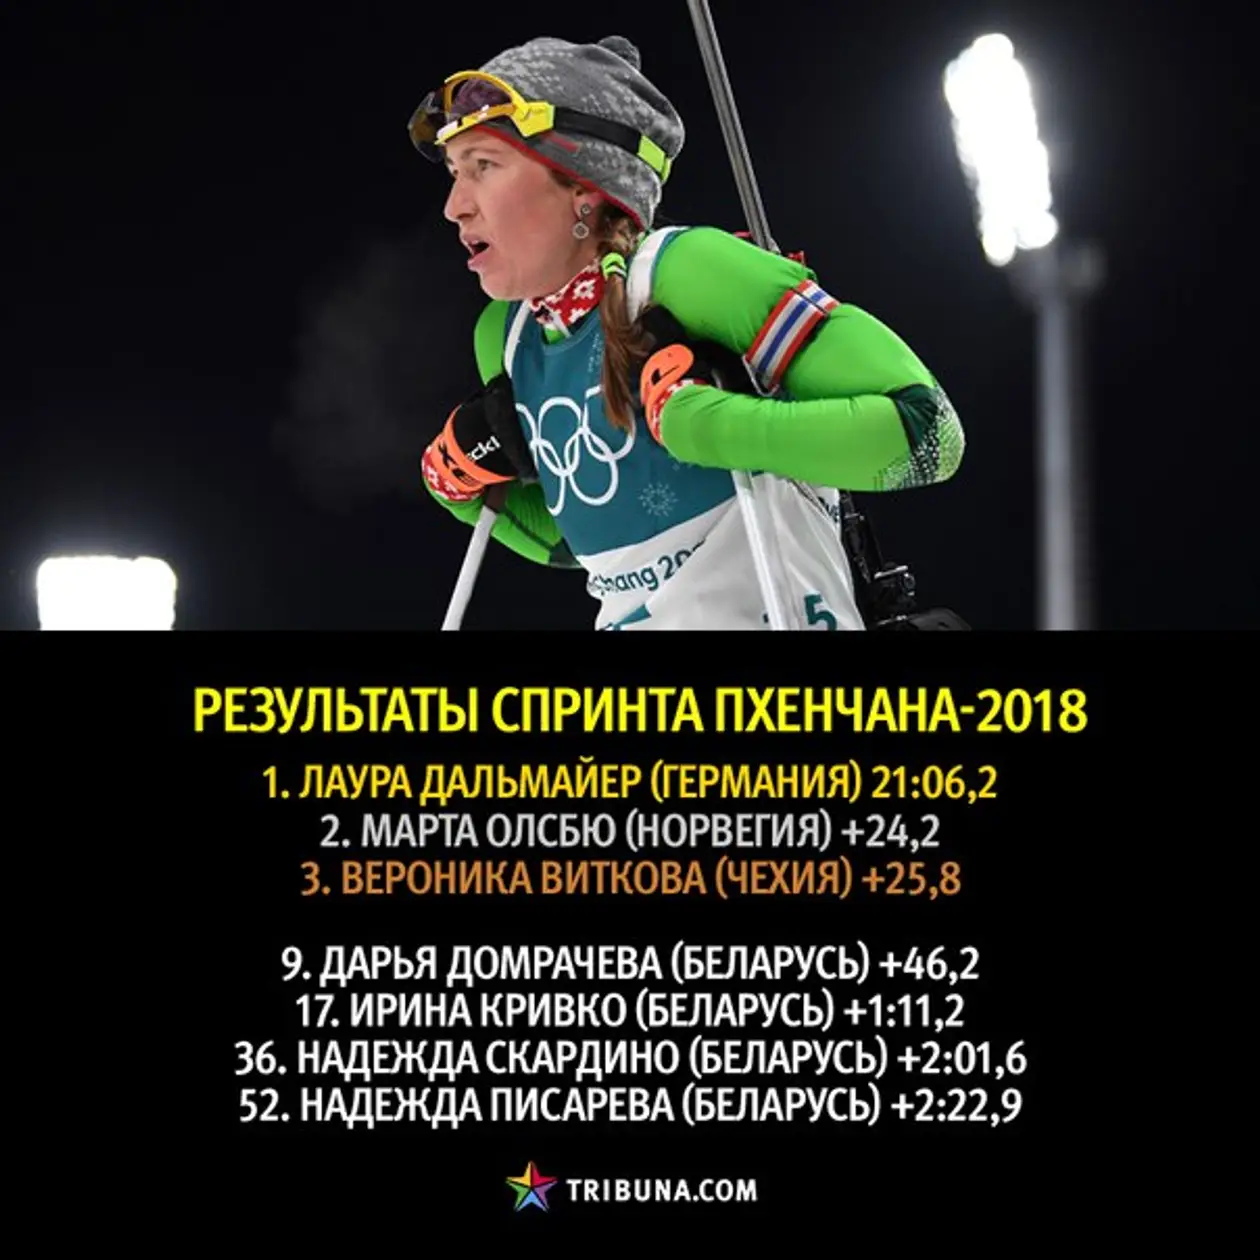 Домрачева всегда проваливает олимпийский спринт, но это только к лучшему: гонку преследования обязательно надо смотреть!